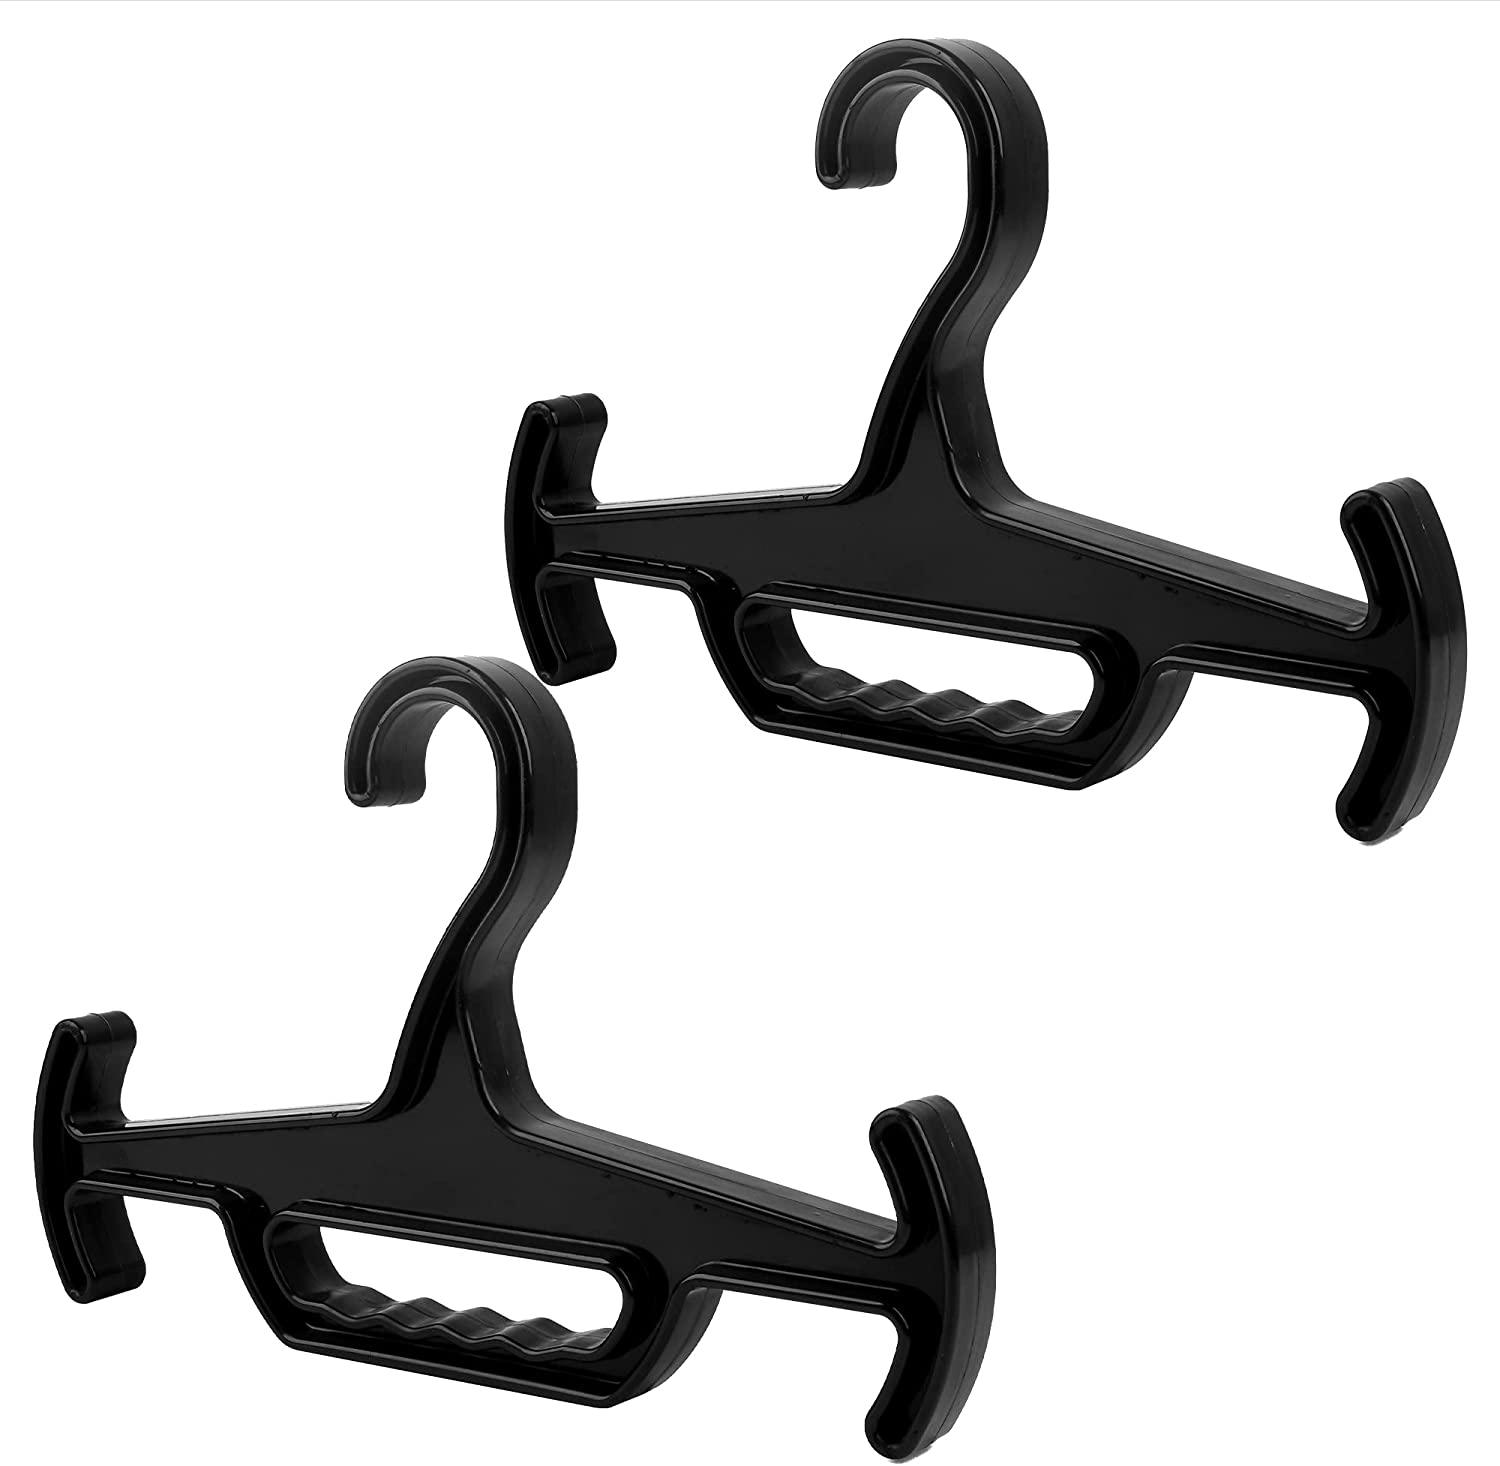  [10 pack] Impresa Mat Hangers for Cricut Cutting Mats to  Organizes - Easy To Install Standard Grip Cutting Mat Hangars - Durable  Impresa Holder for Cricut Mat Holder - Mat Hook 